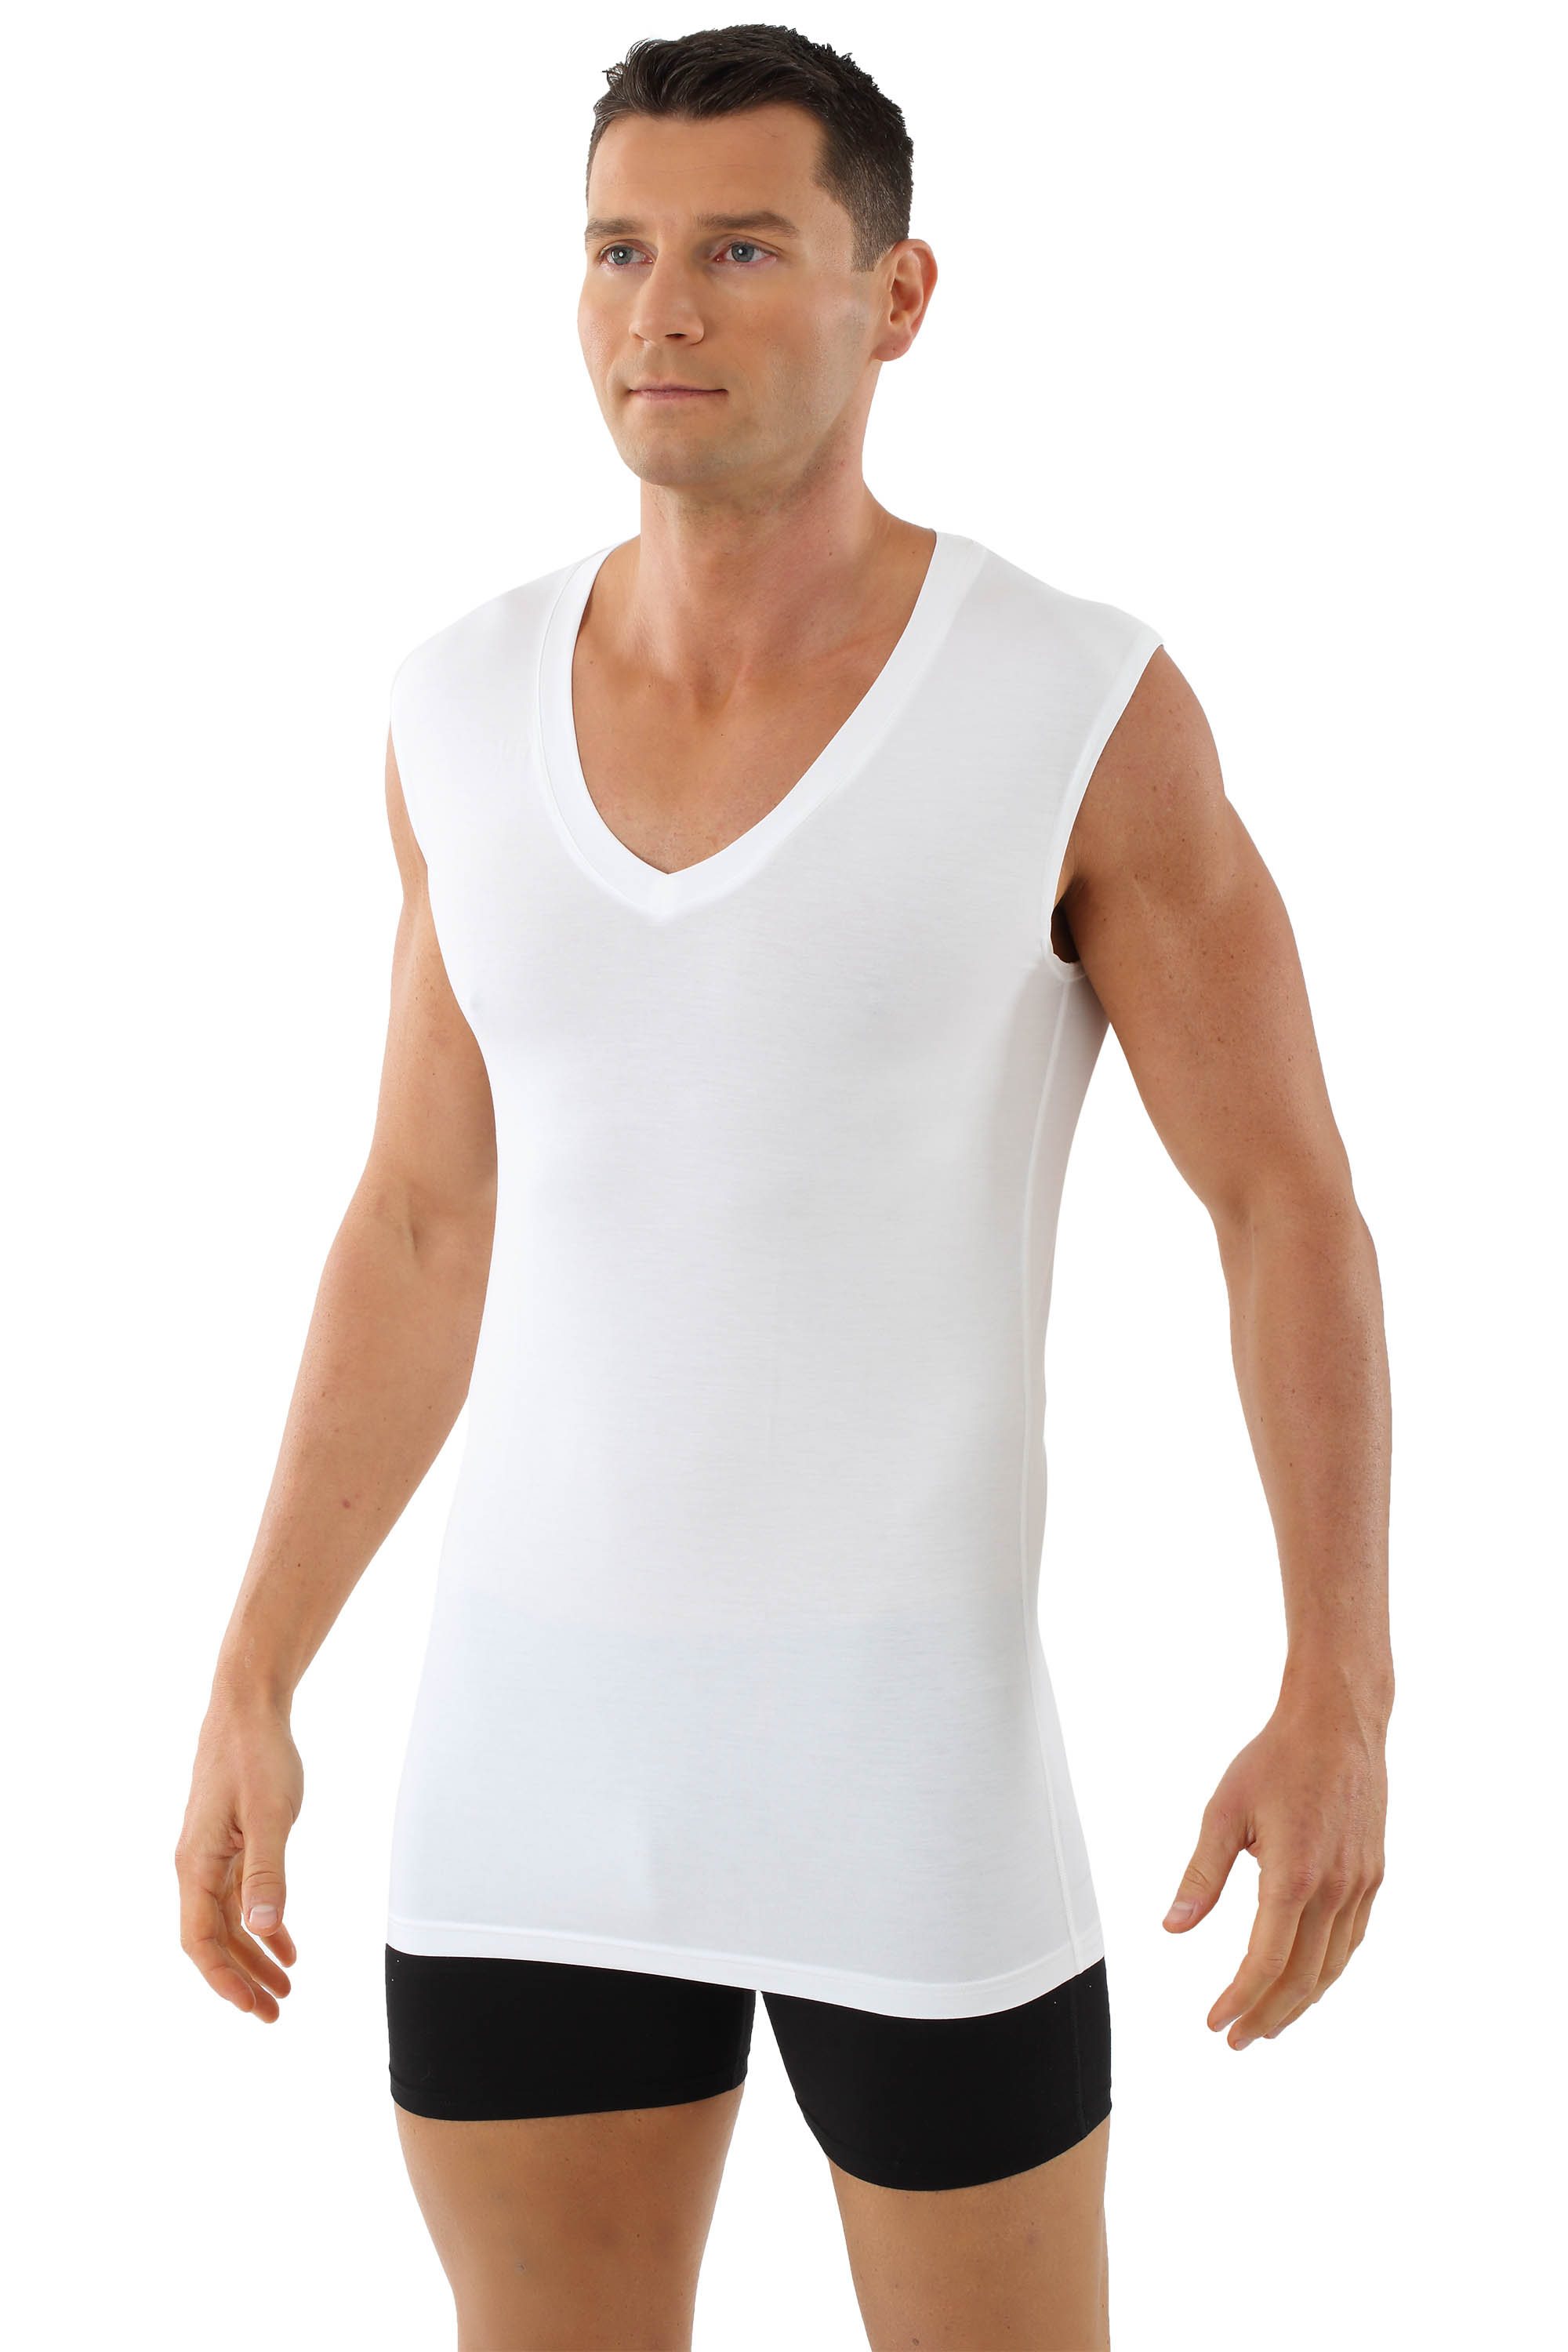 Men's MicroModal sleeveless undershirt Stuttgart light deep v-neck white